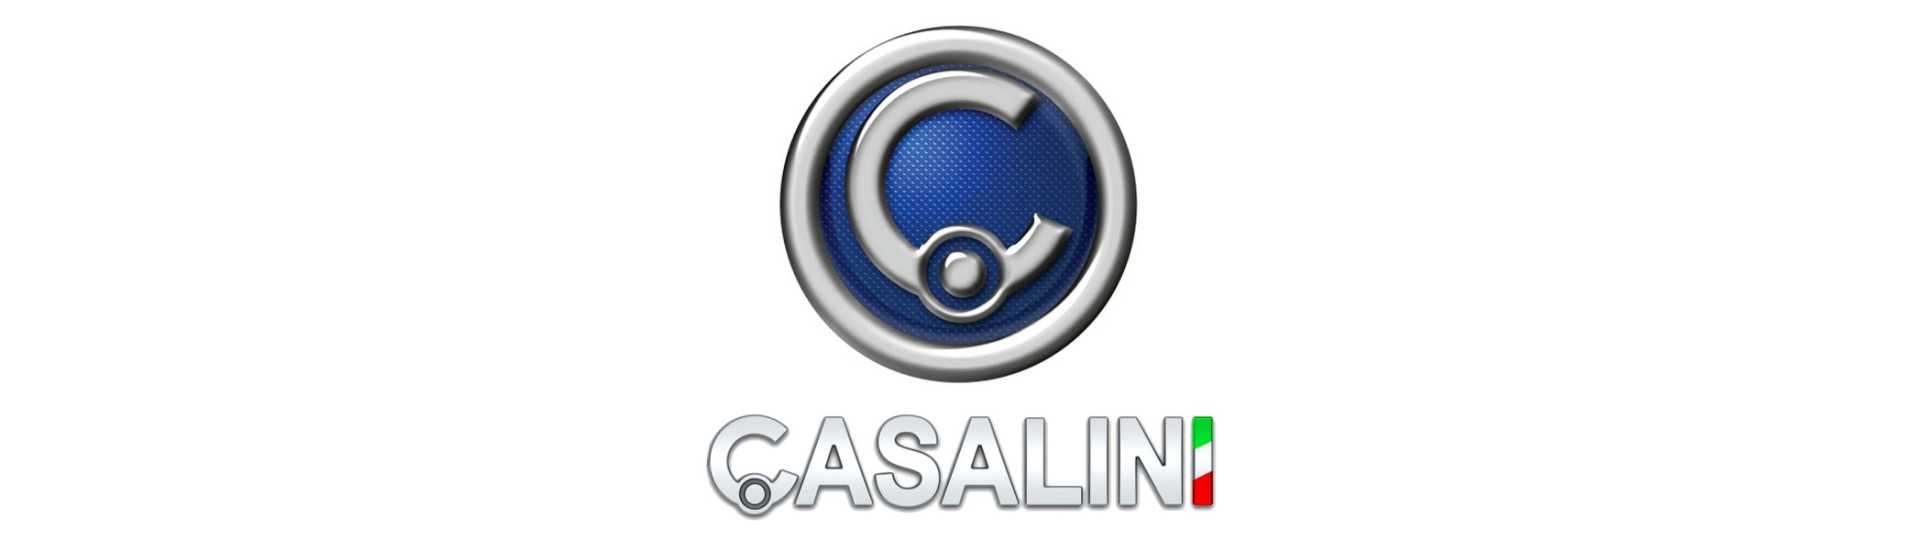 Bromsdelare till bästa pris för bil utan tillstånd Casalini